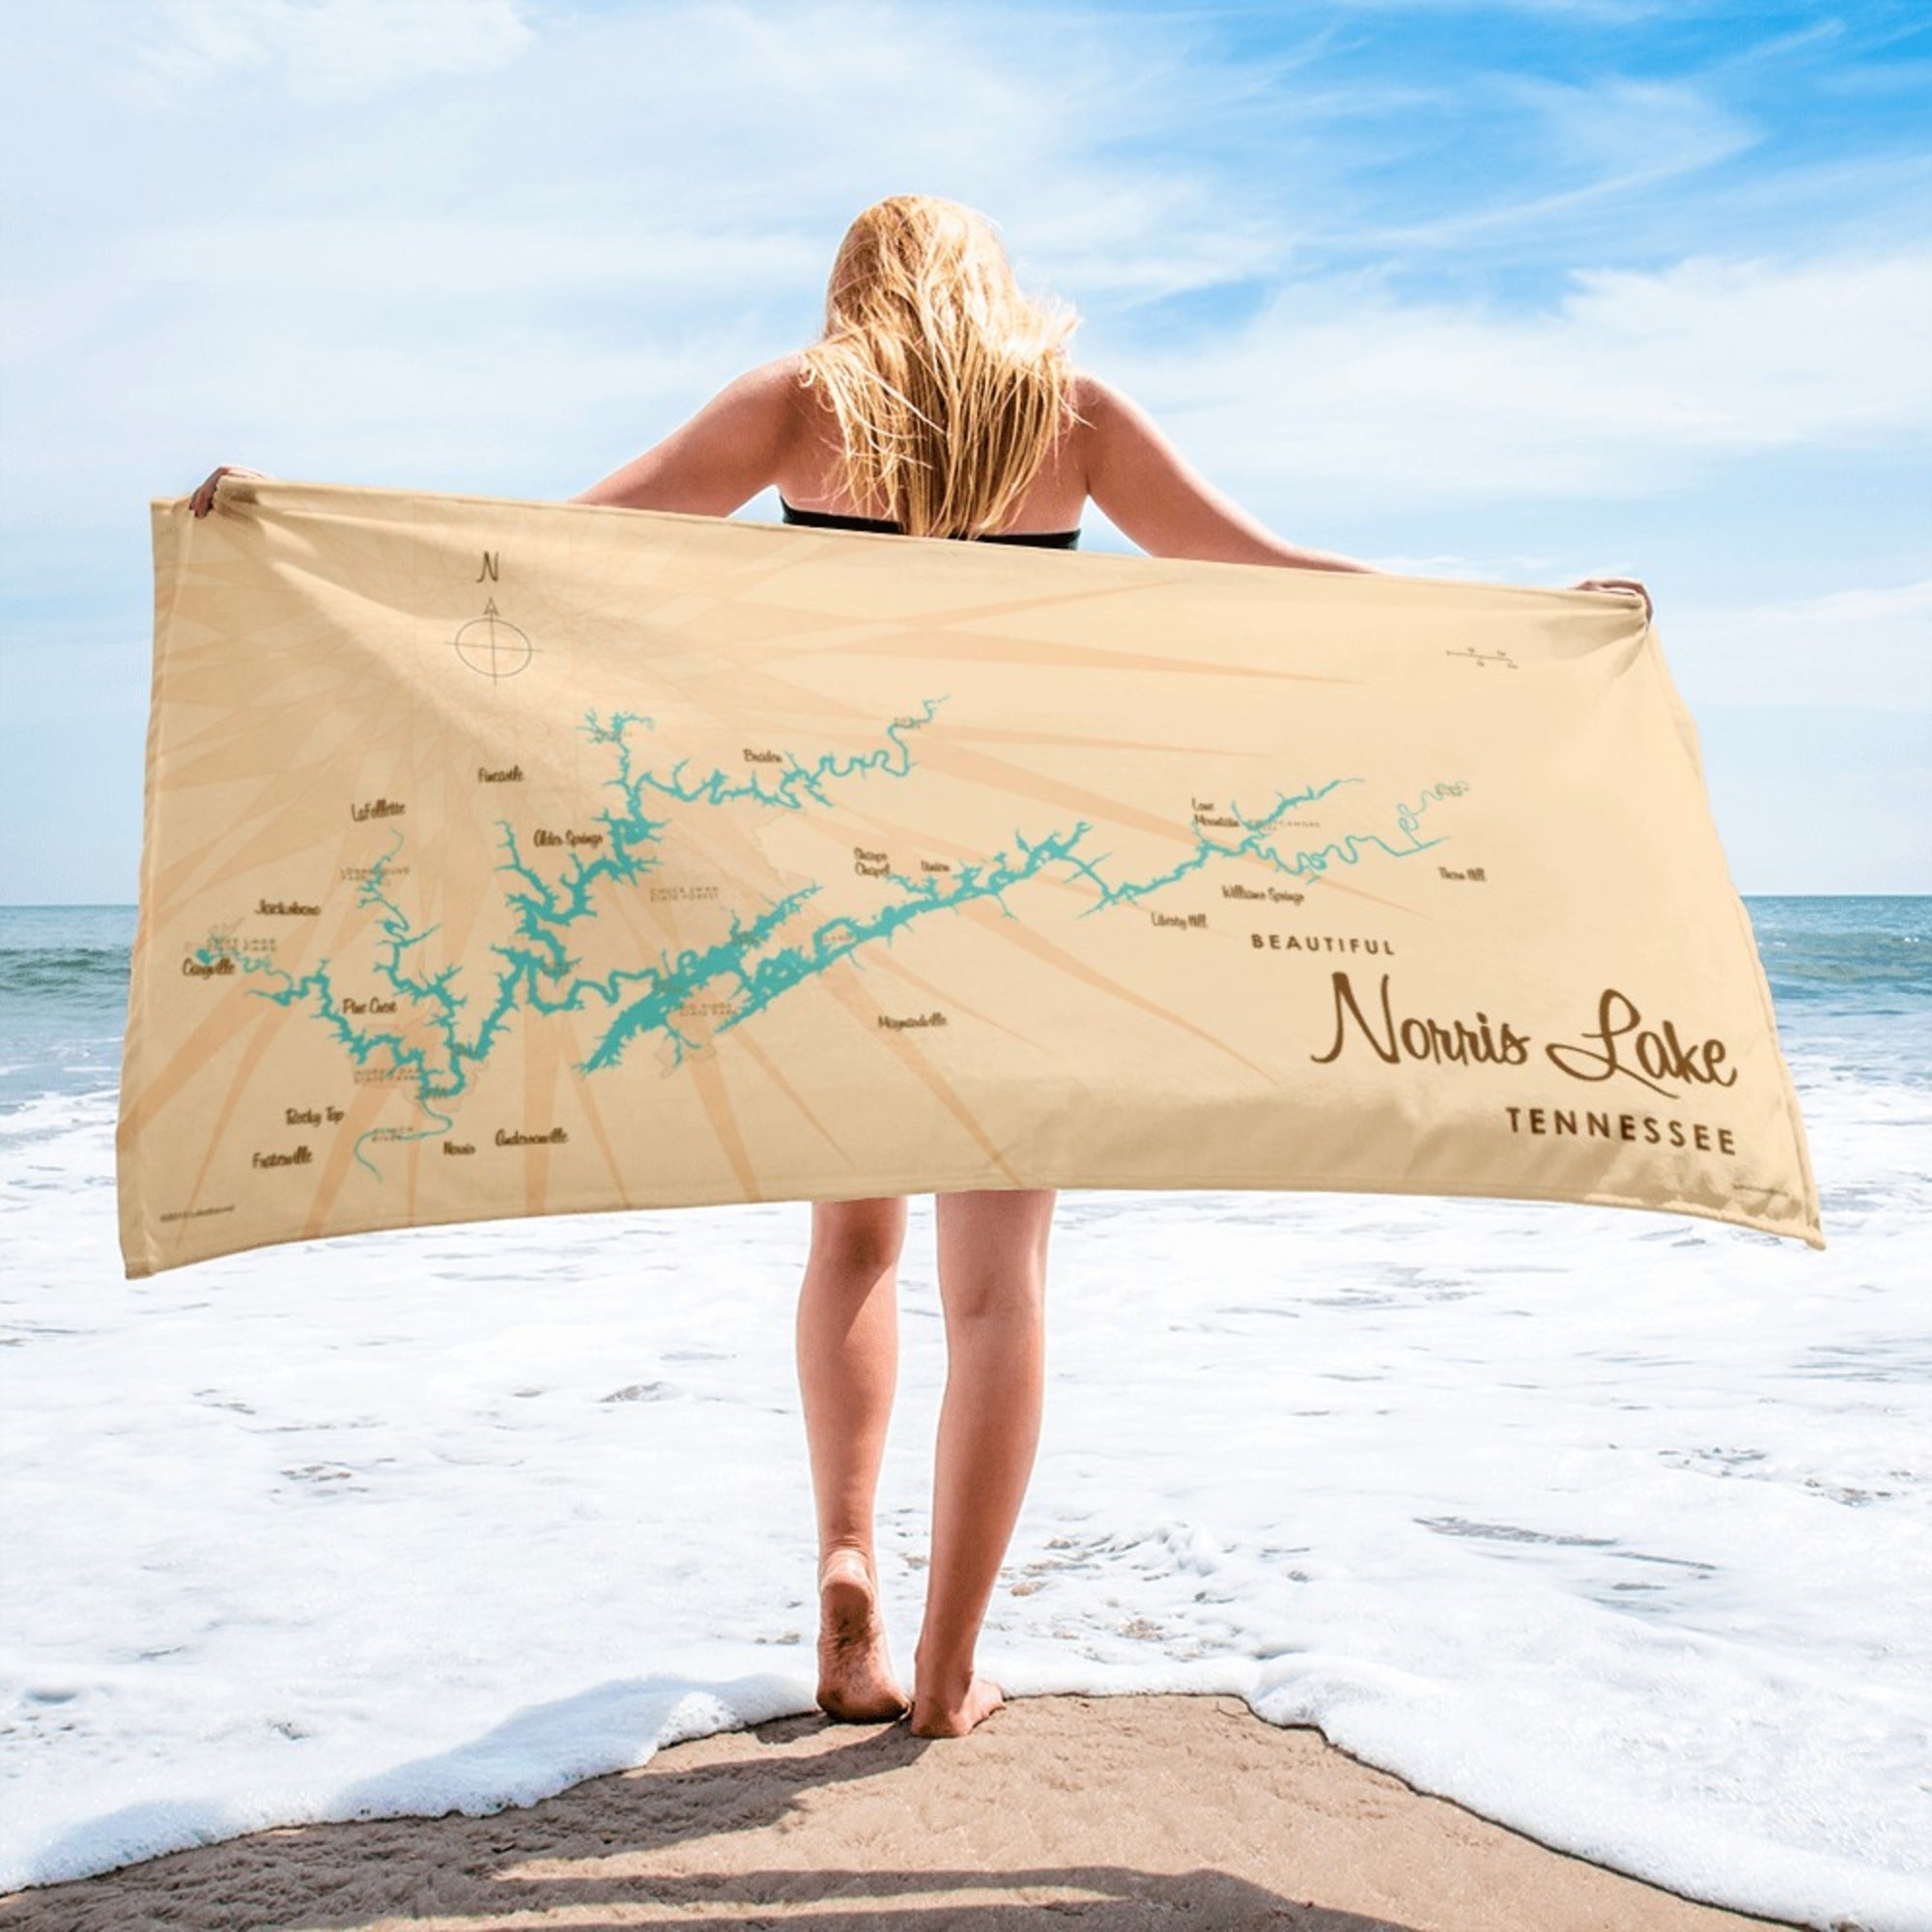 Norris Lake Tennessee Beach Towel